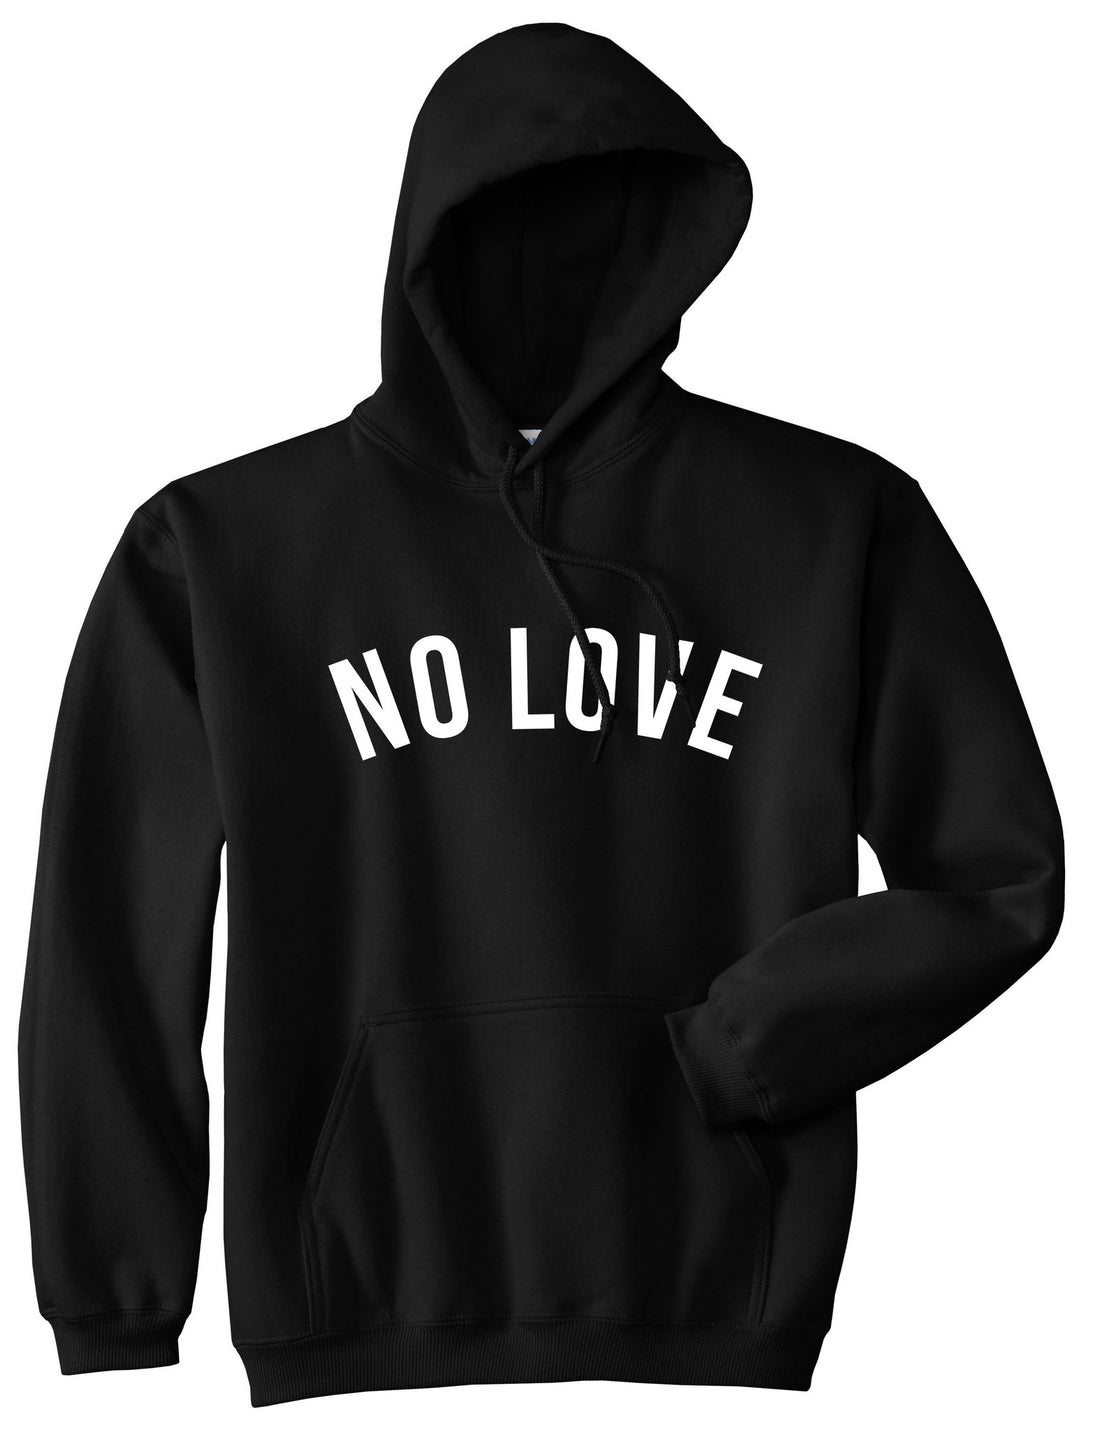 No Love Pullover Hoodie Hoody in Black by Kings Of NY